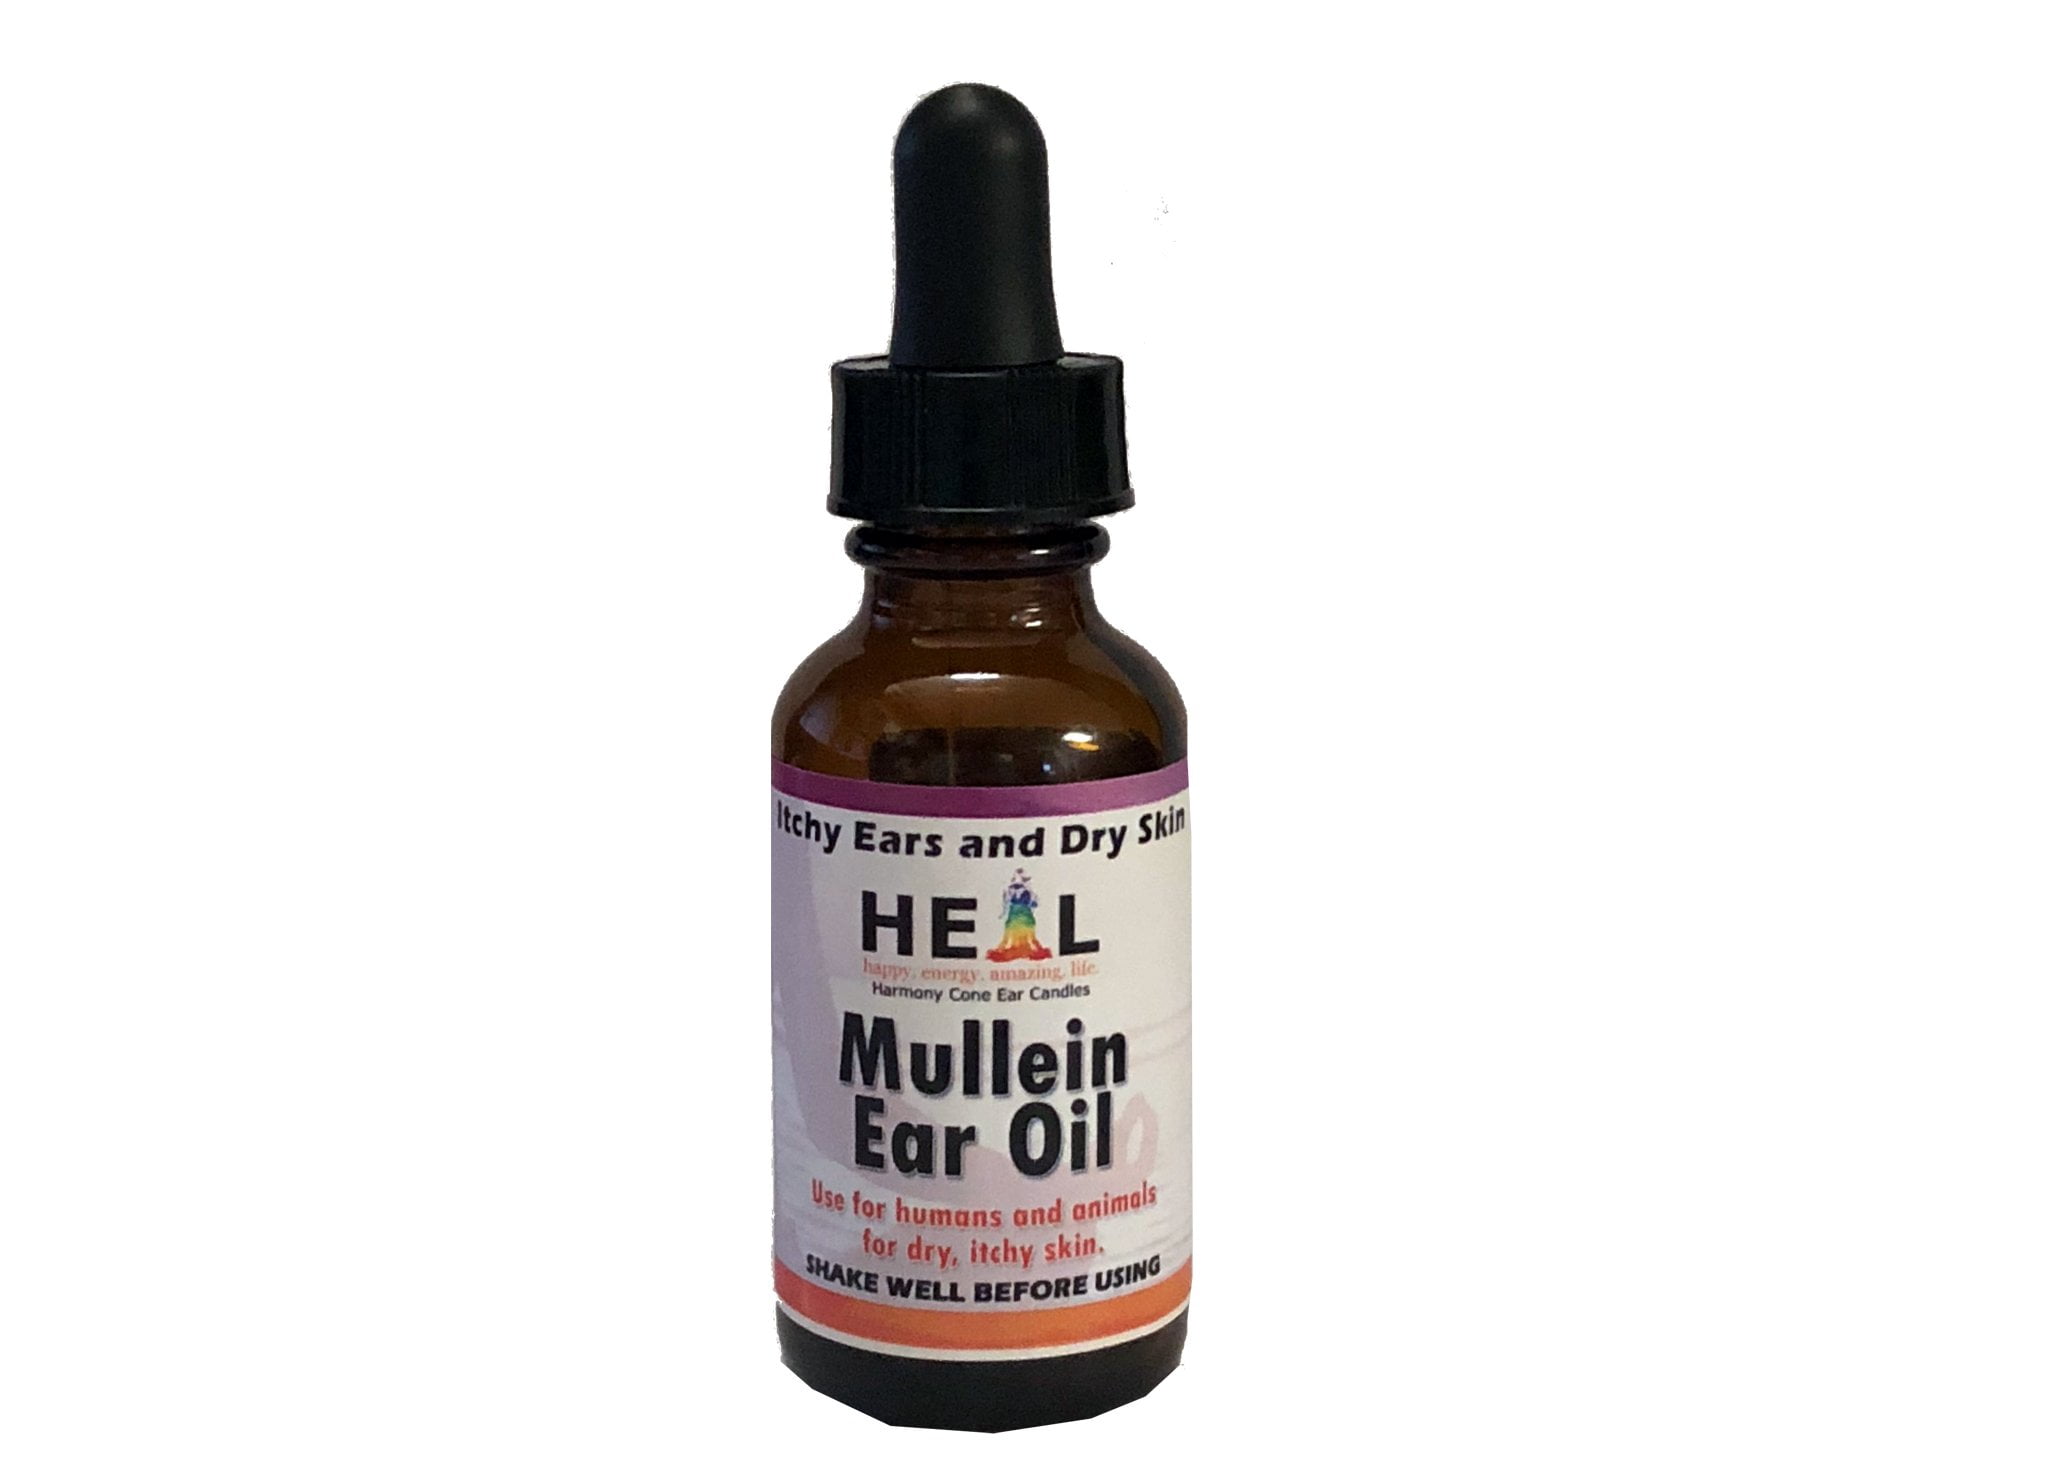 HEAL's Mullein Ear Oil - 1oz - Walmart.com